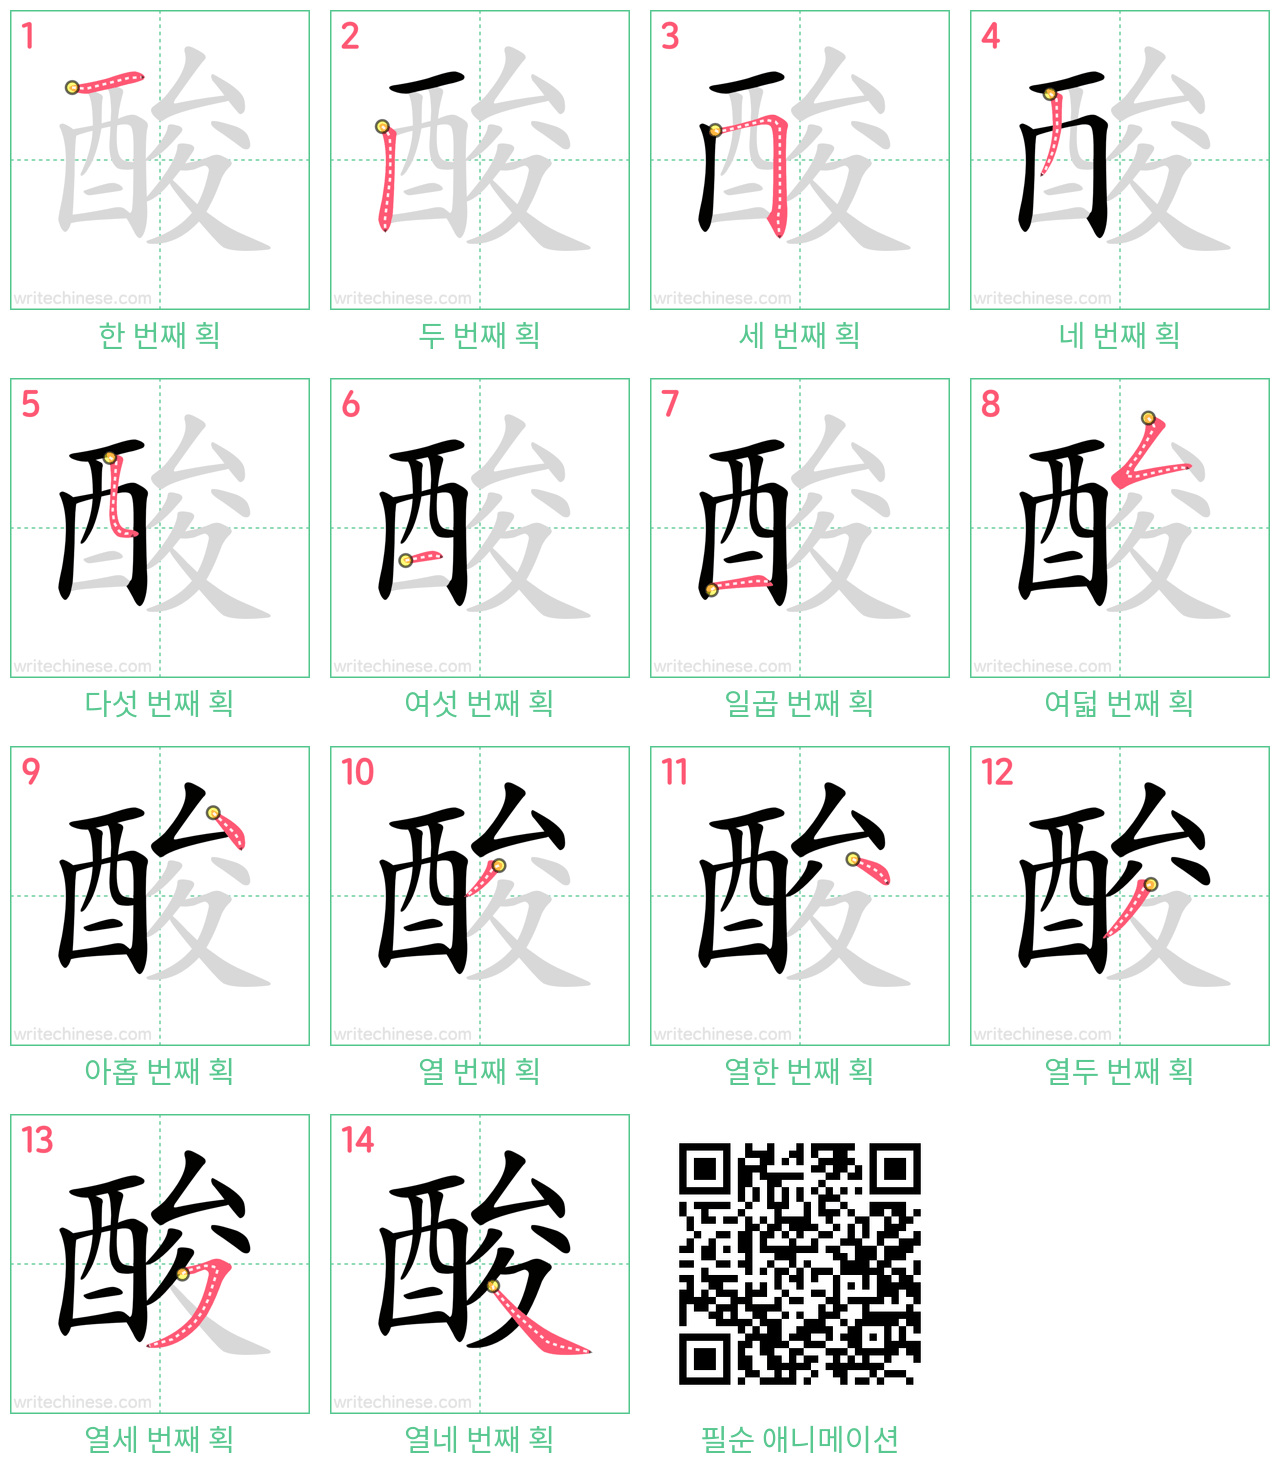 酸 step-by-step stroke order diagrams